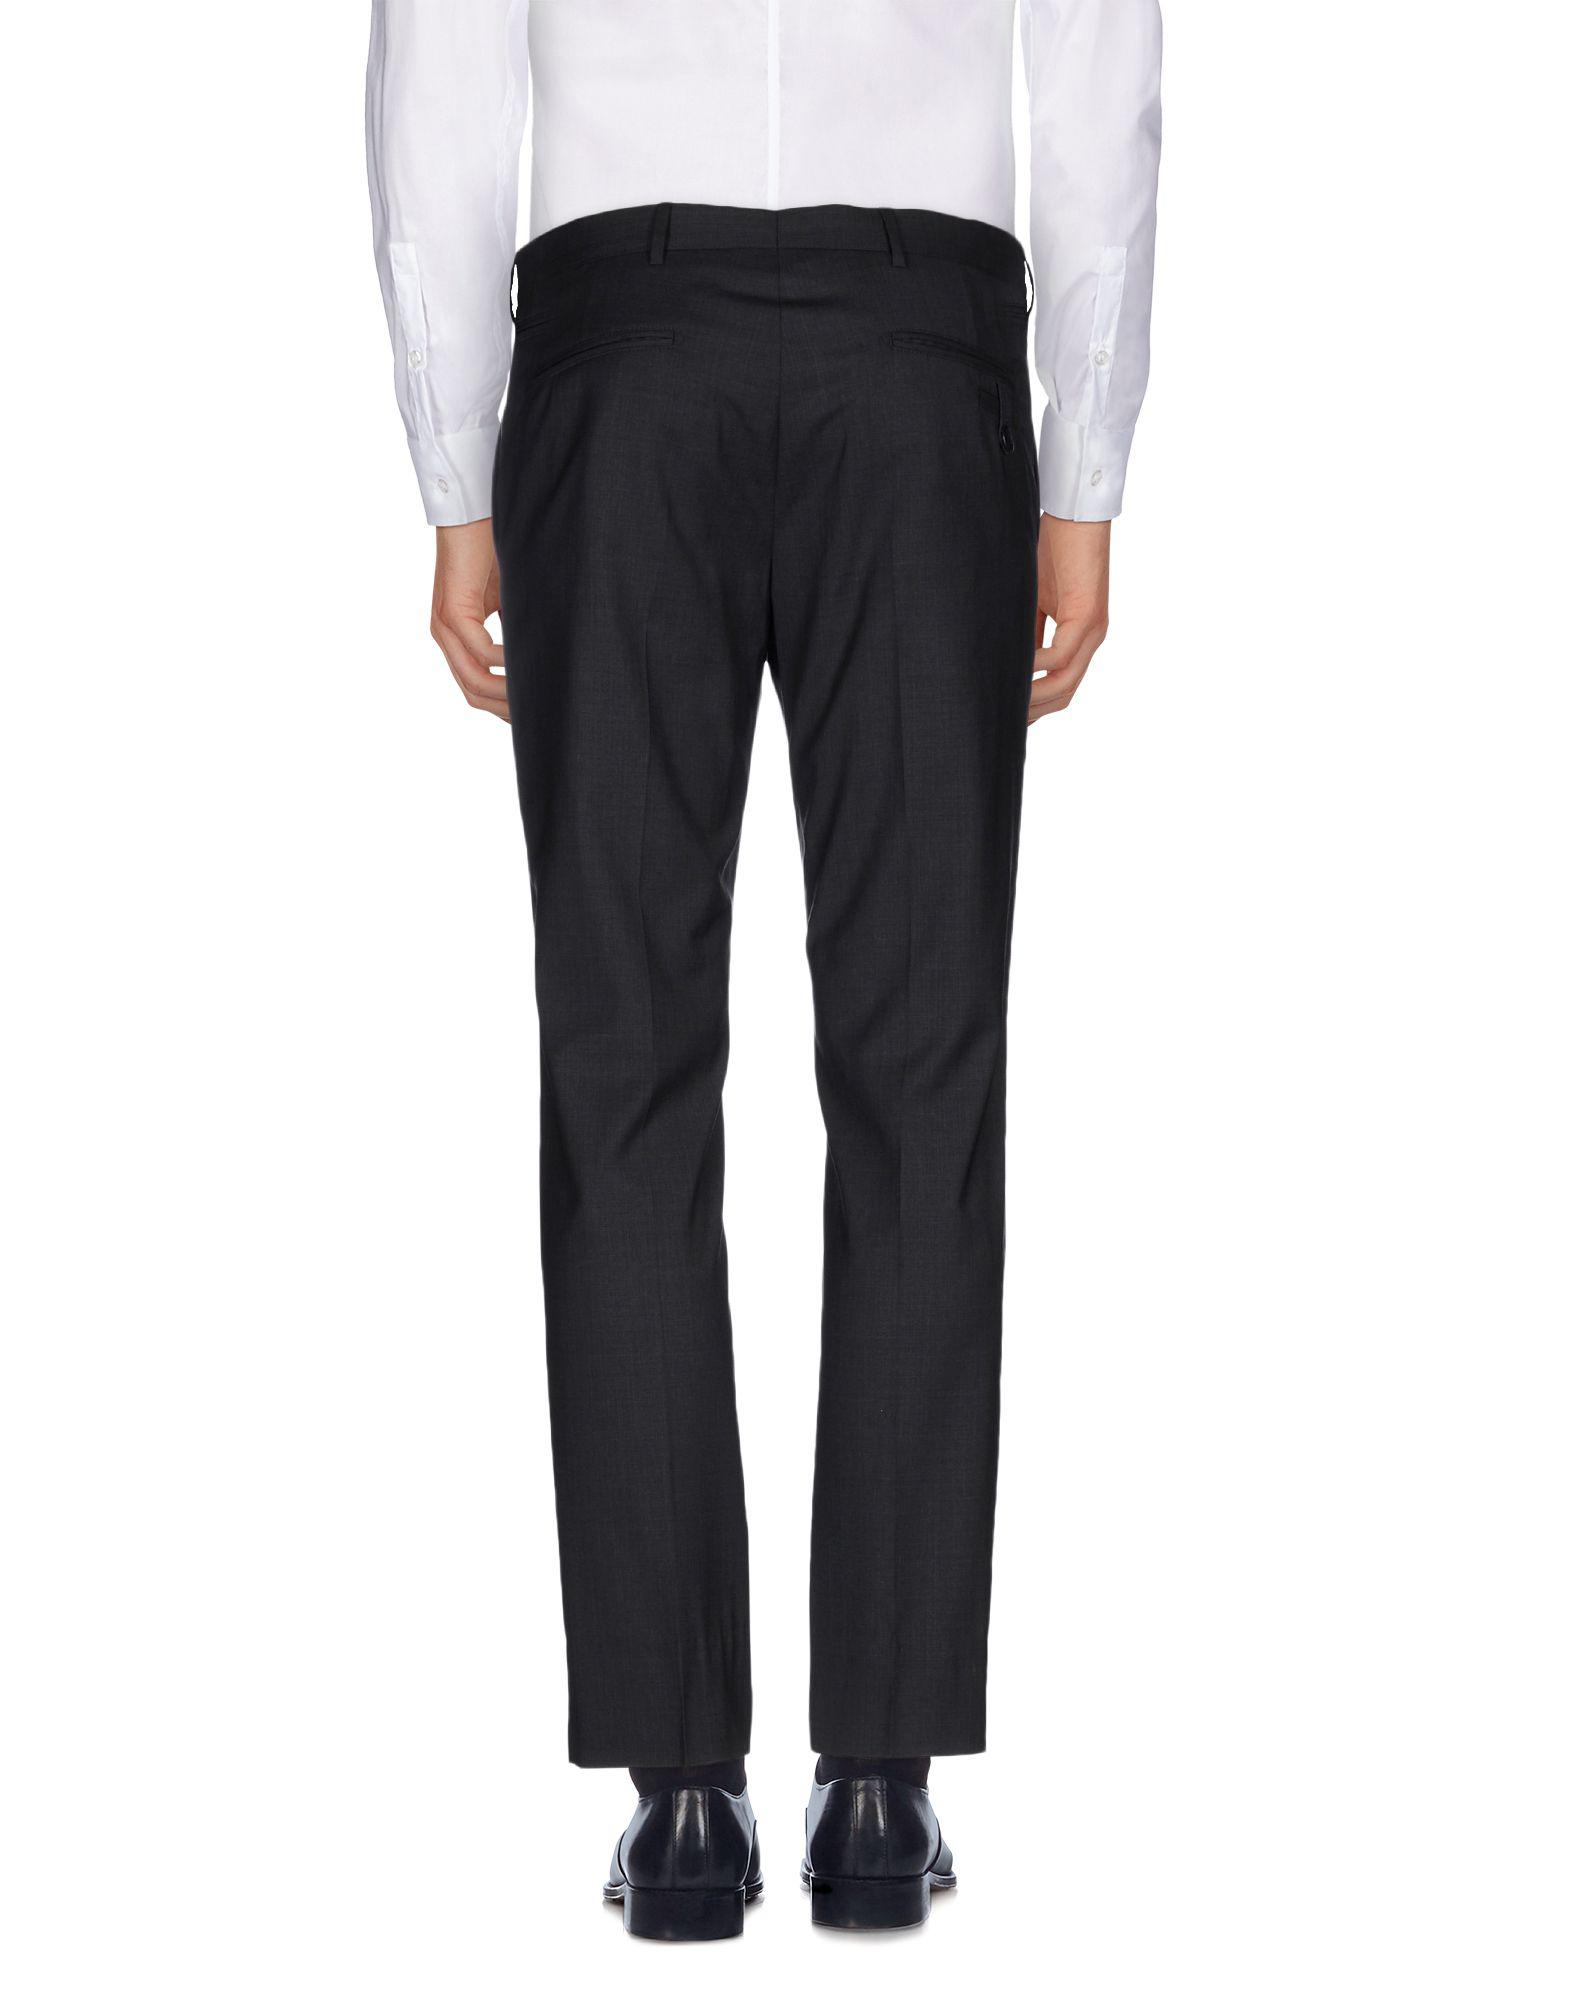 Lyst - Prada Casual Pants in Gray for Men